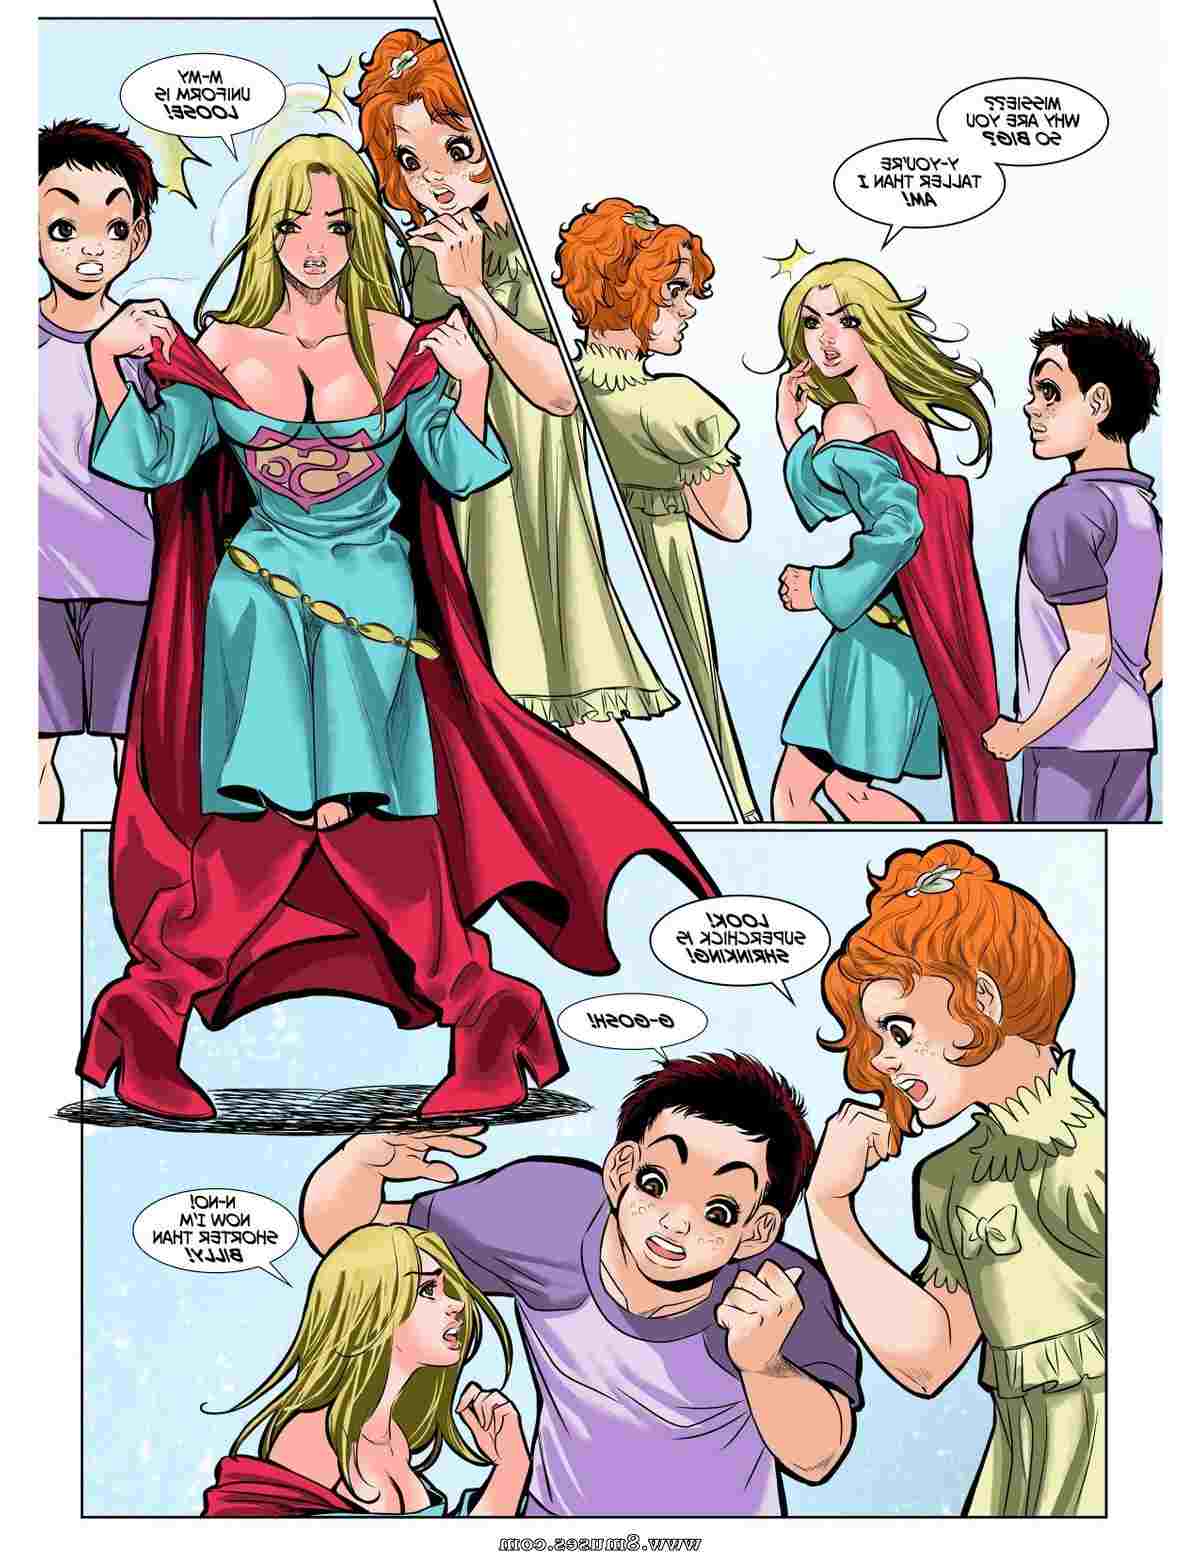 DreamTales-Comics/Superchicks-Biggest-Fans Superchicks_Biggest_Fans__8muses_-_Sex_and_Porn_Comics_7.jpg